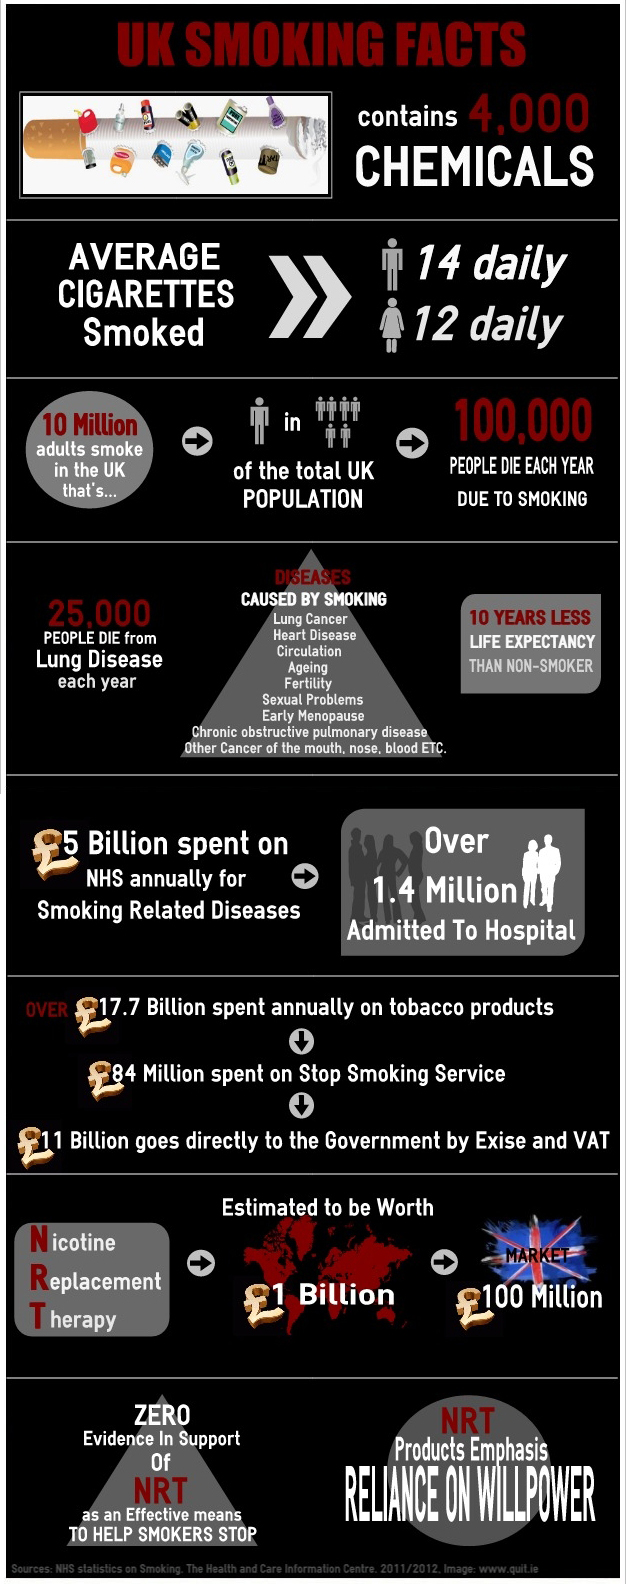 UK Smoking Facts